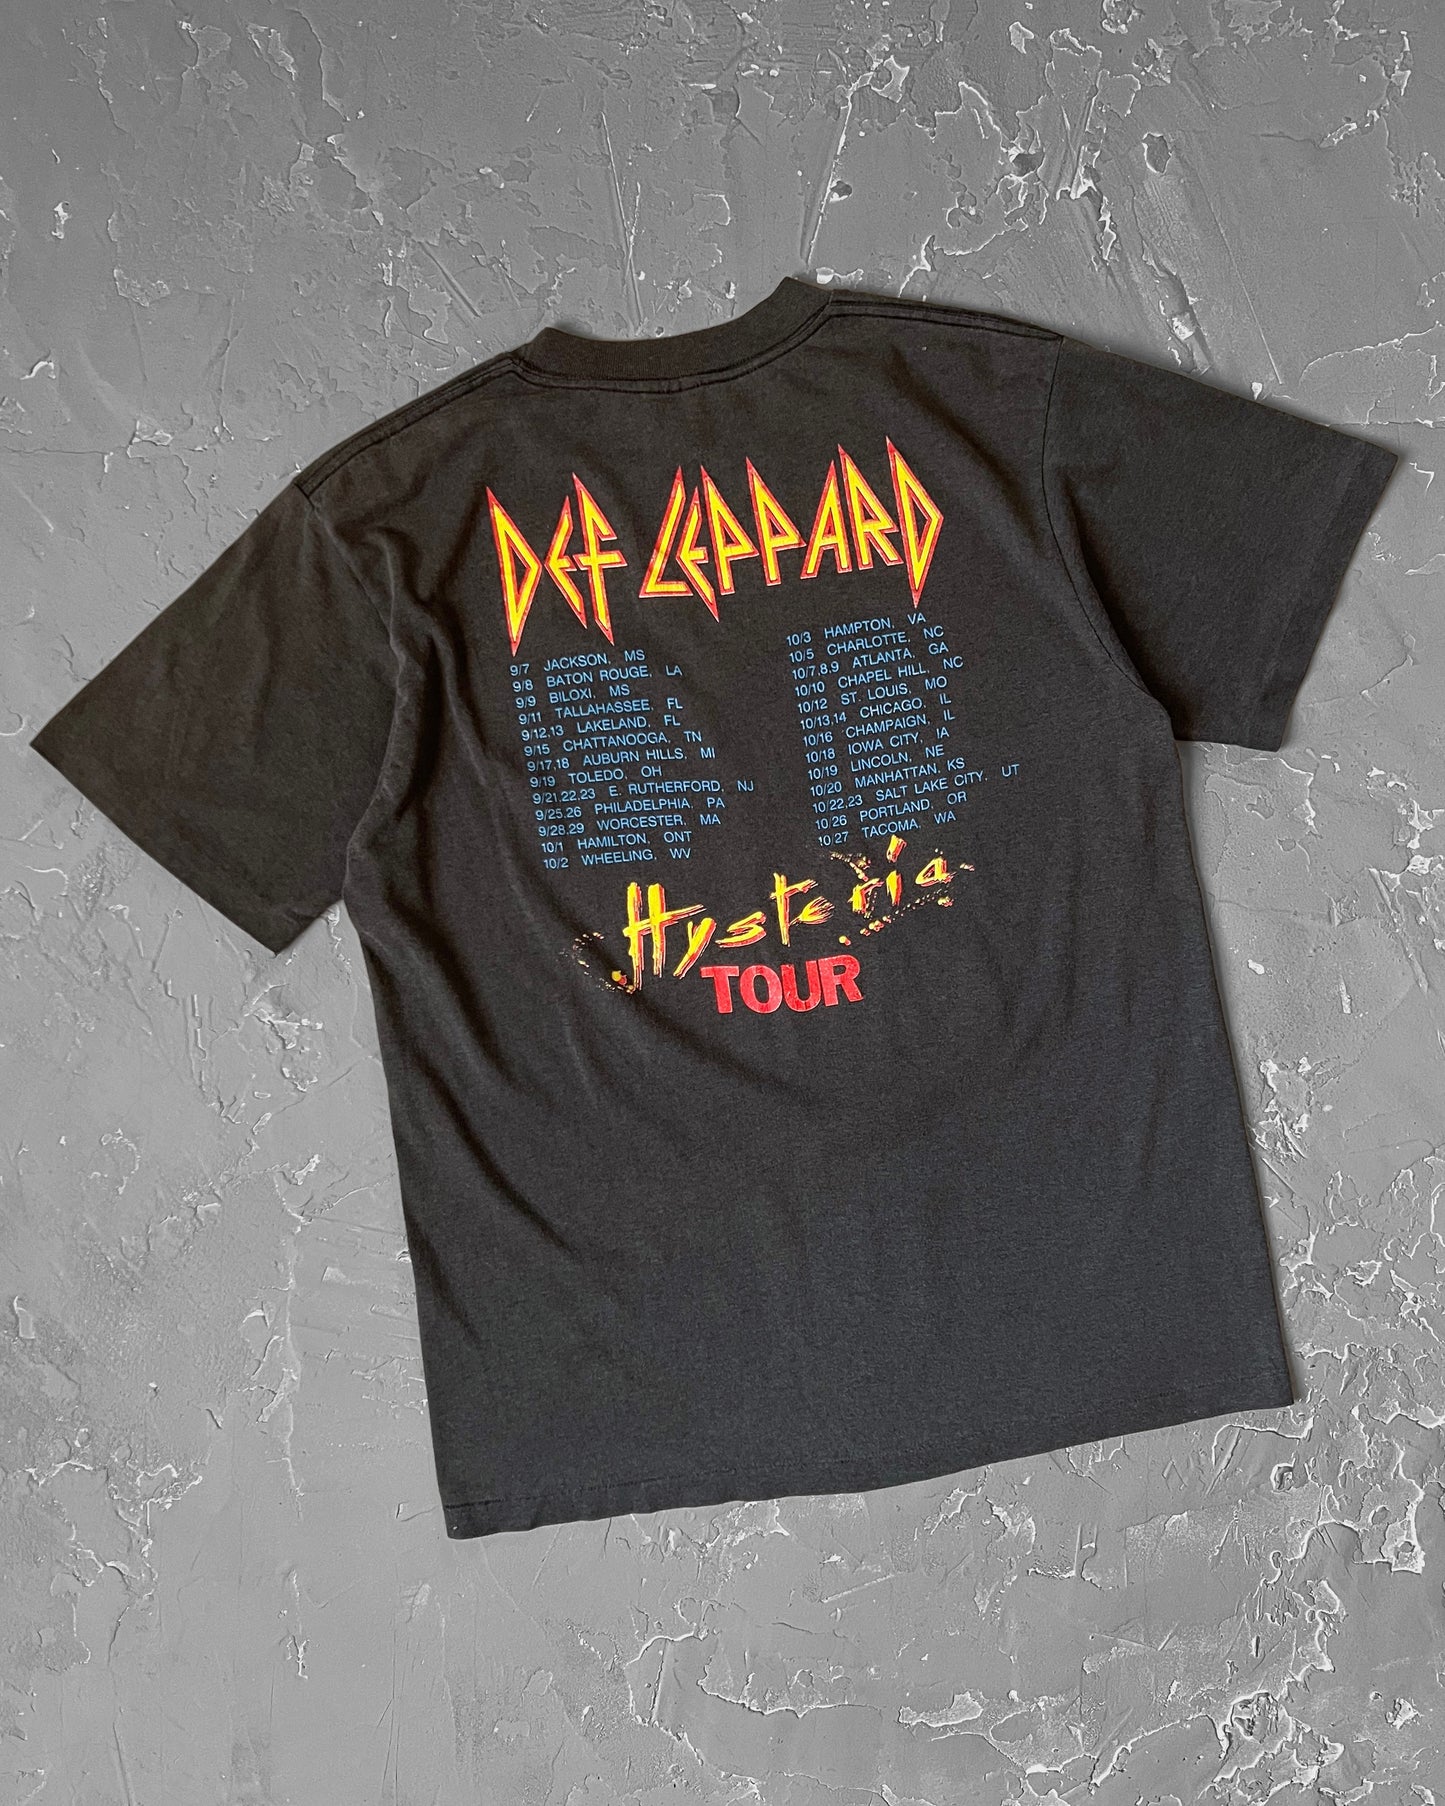 1988 Def Leppard “Hysteria” Tour Tee [M]